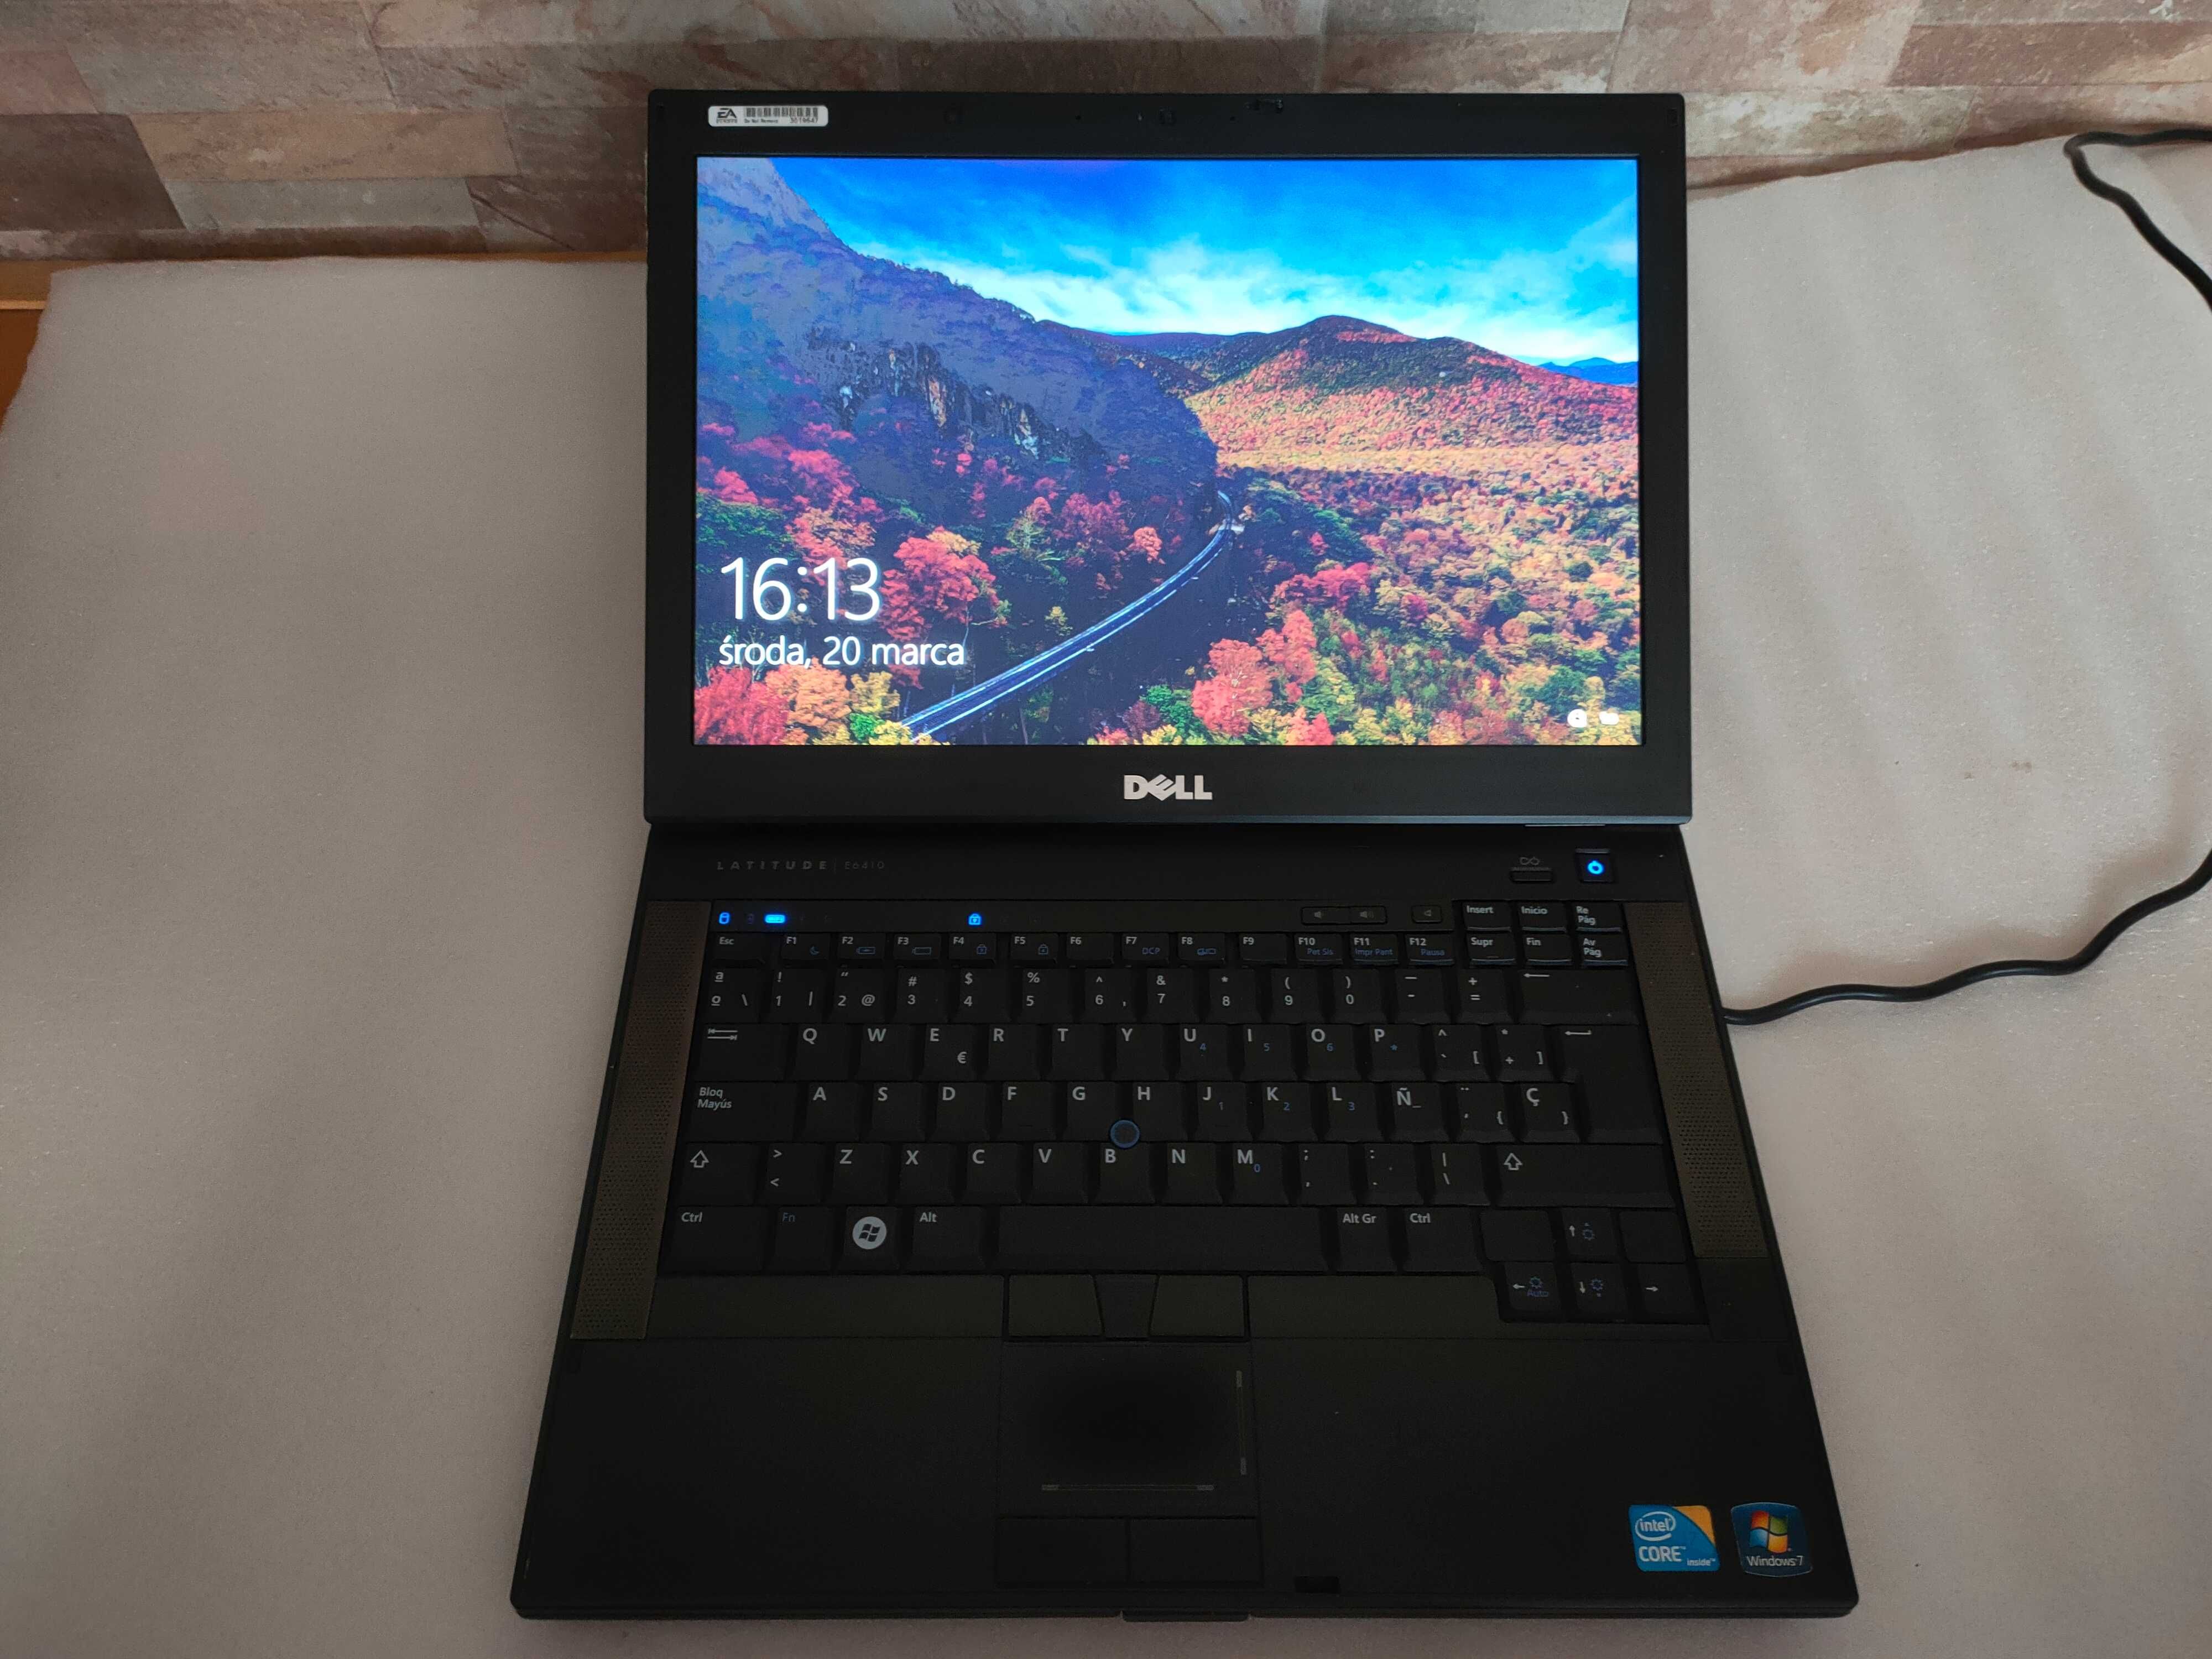 Laptop DELL E6410 Intel Core i7 SSD 120GB Windows 10